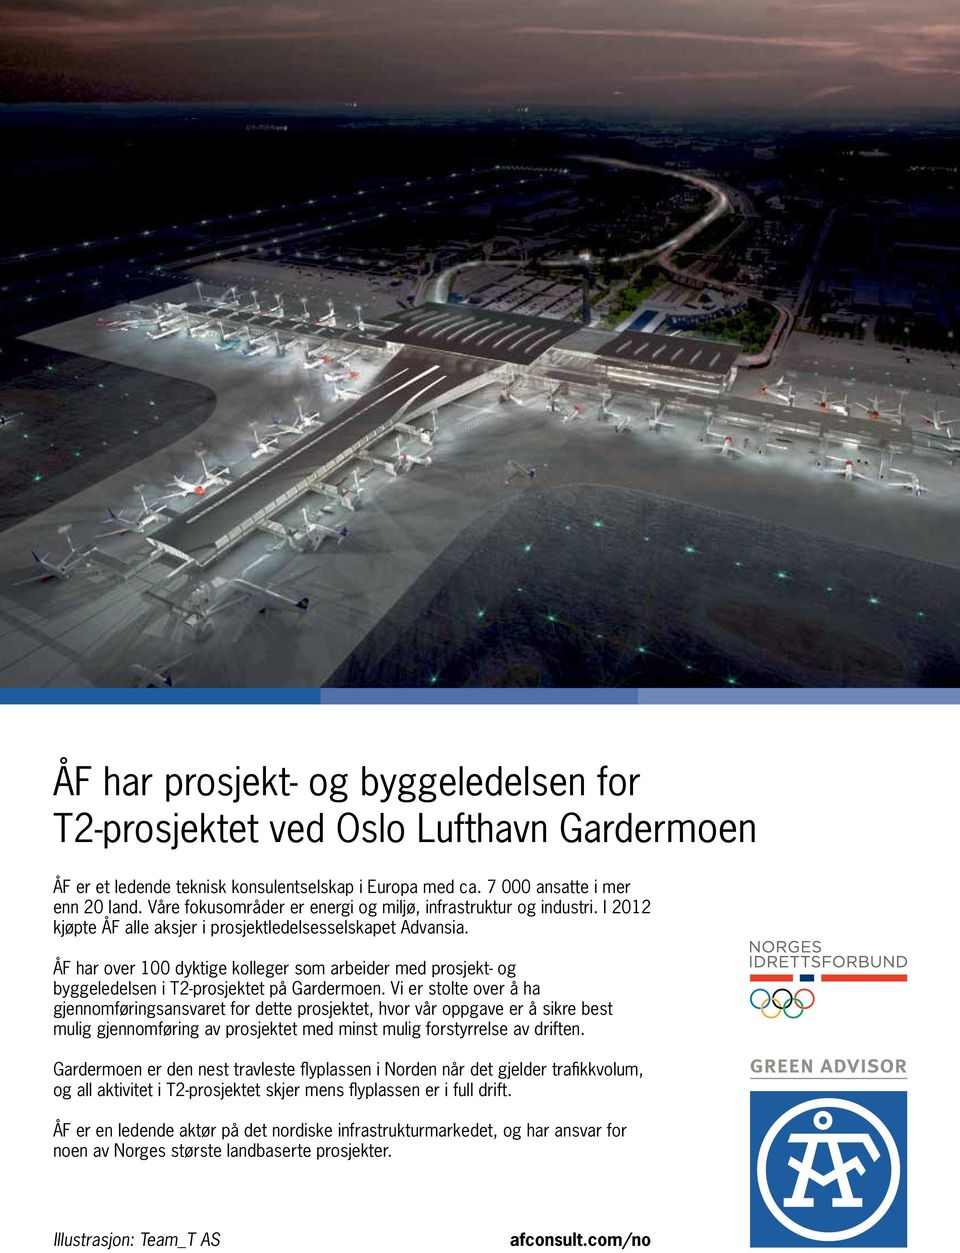 ÅF har over 100 dyktige kolleger som arbeider med prosjekt- og byggeledelsen i T2-prosjektet på Gardermoen.